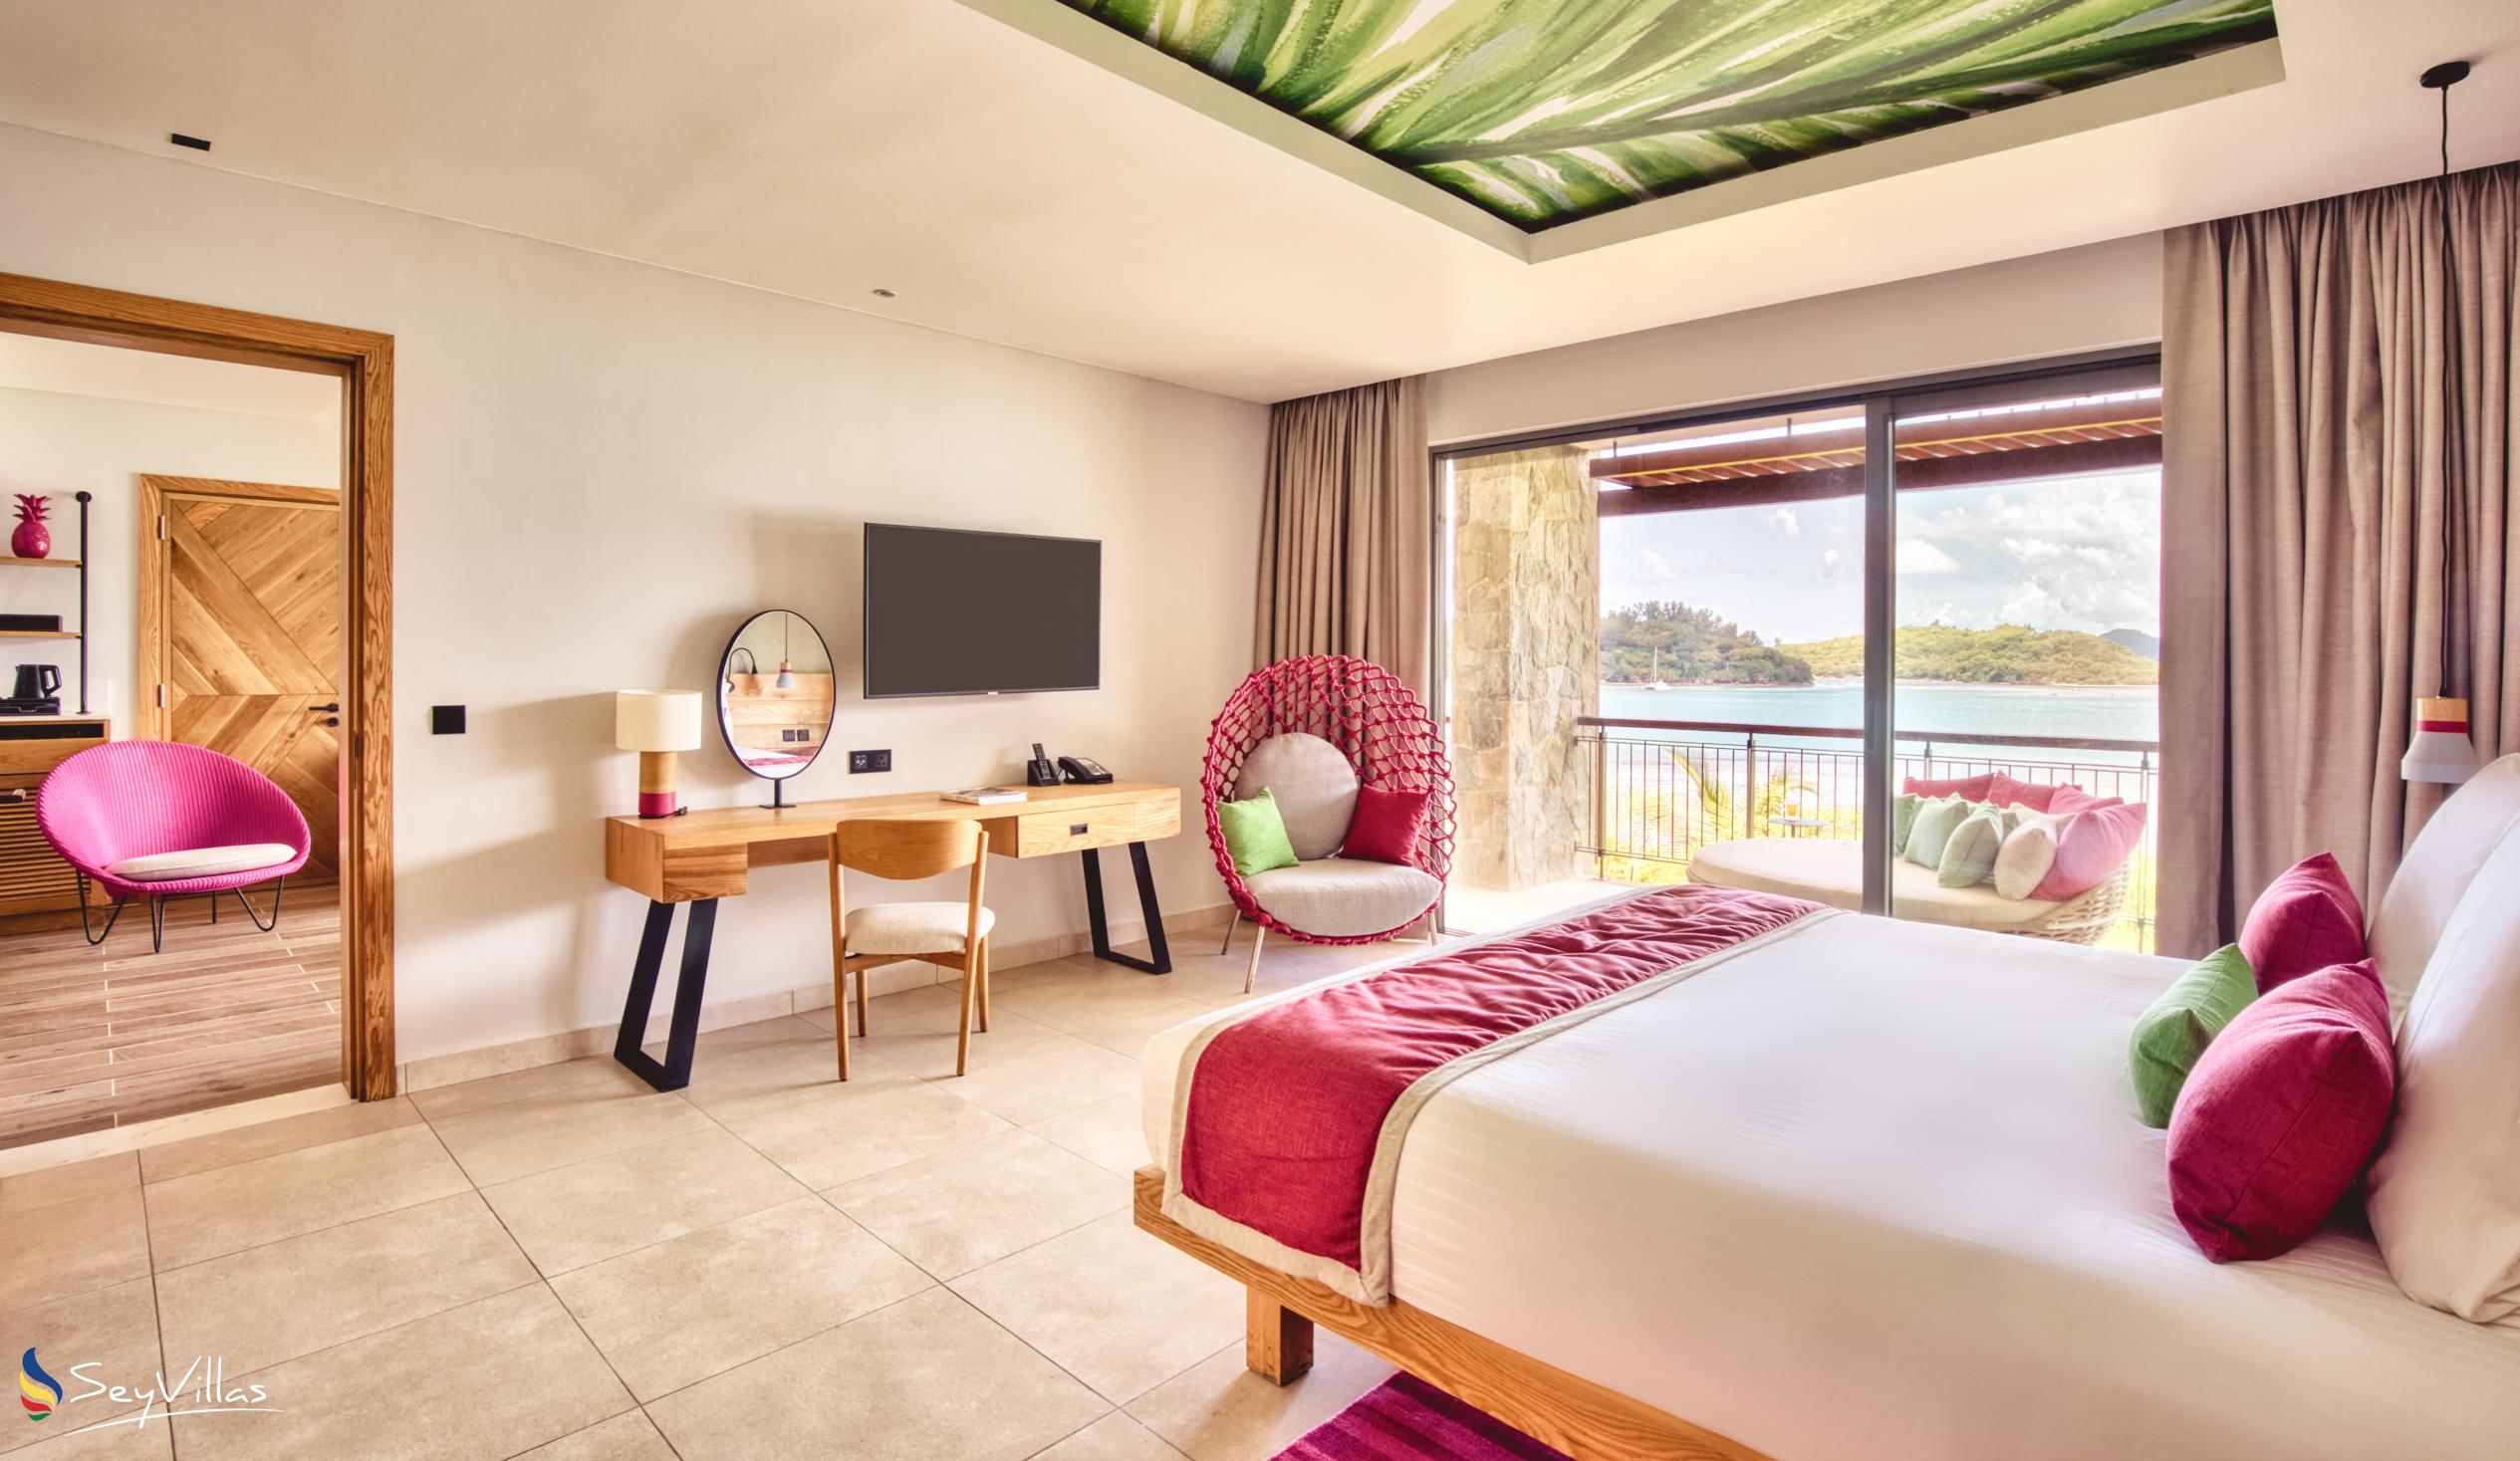 Photo 148: Club Med Seychelles - Ocean View Suite - Saint Anne (Seychelles)